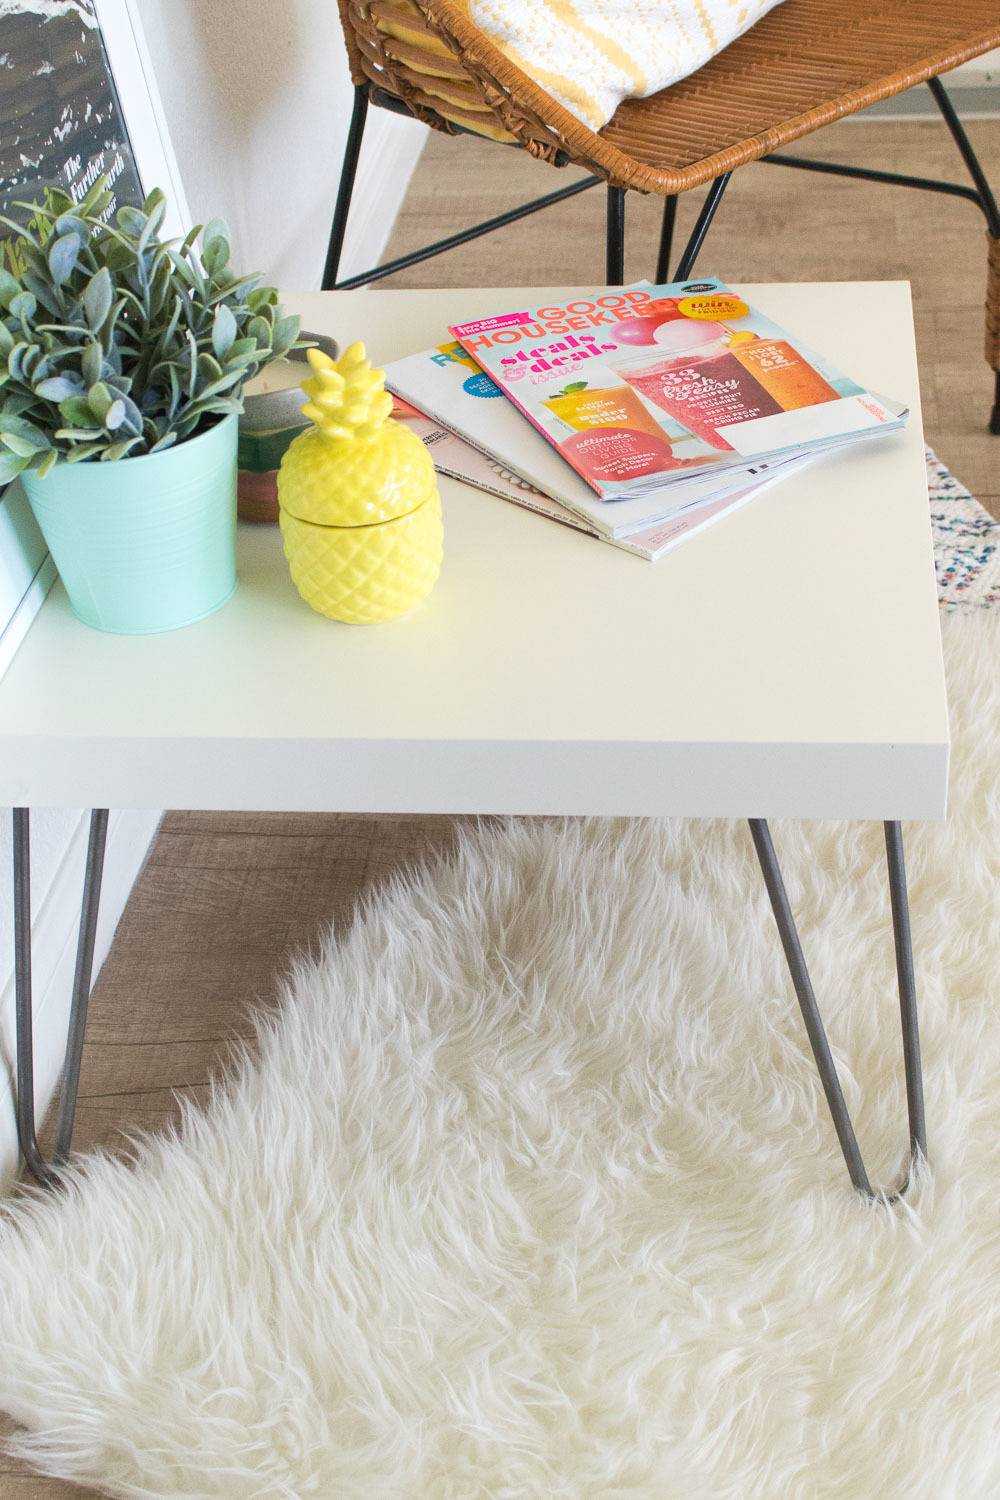 IKEA Hack! Make a 10-Minute Side Table